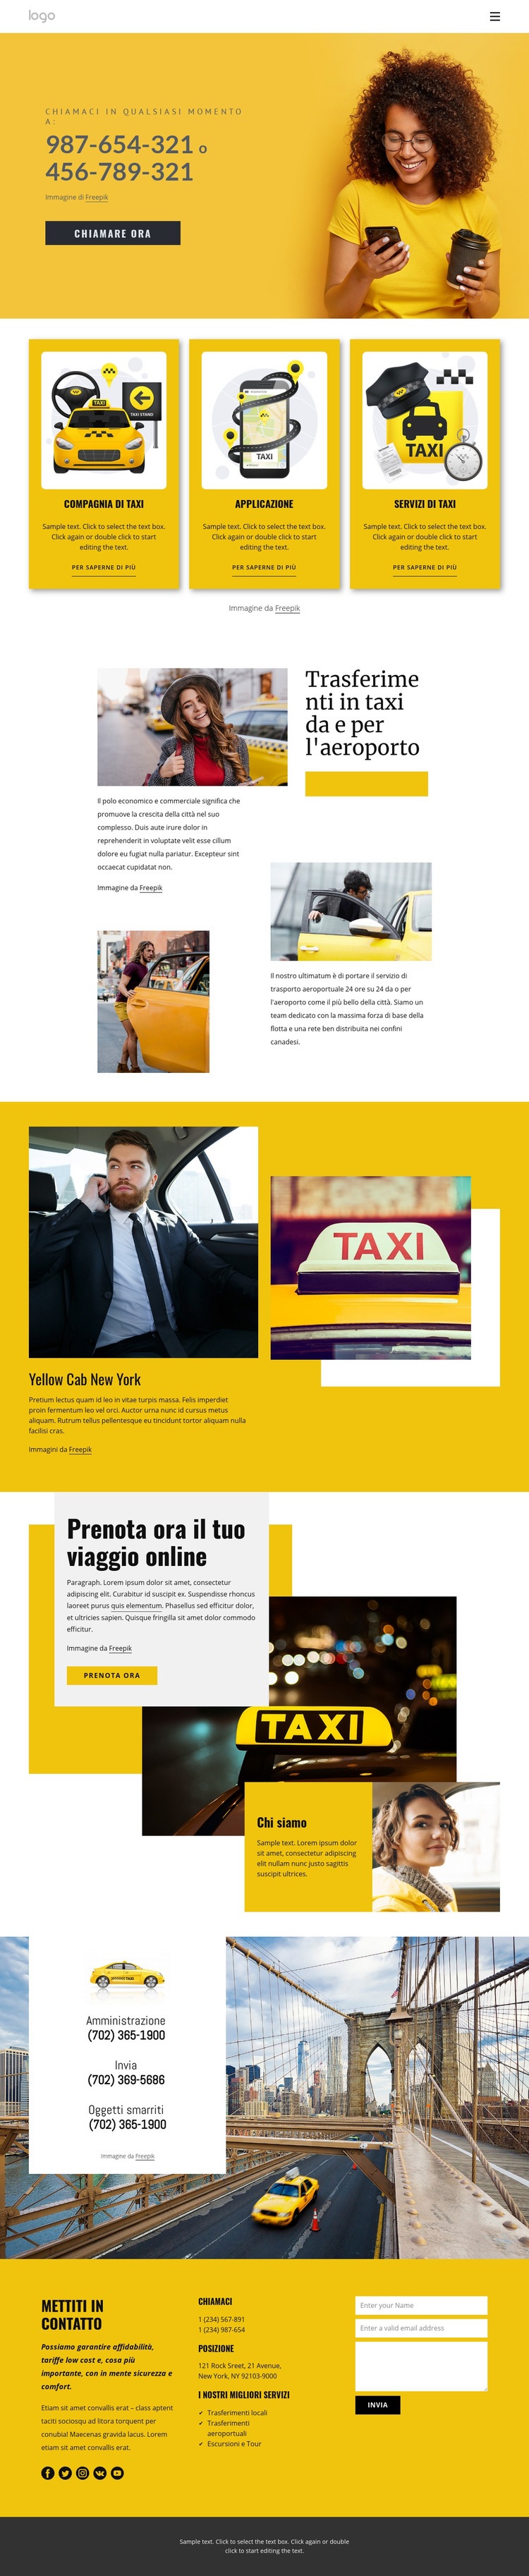 Servizio taxi di qualità Pagina di destinazione